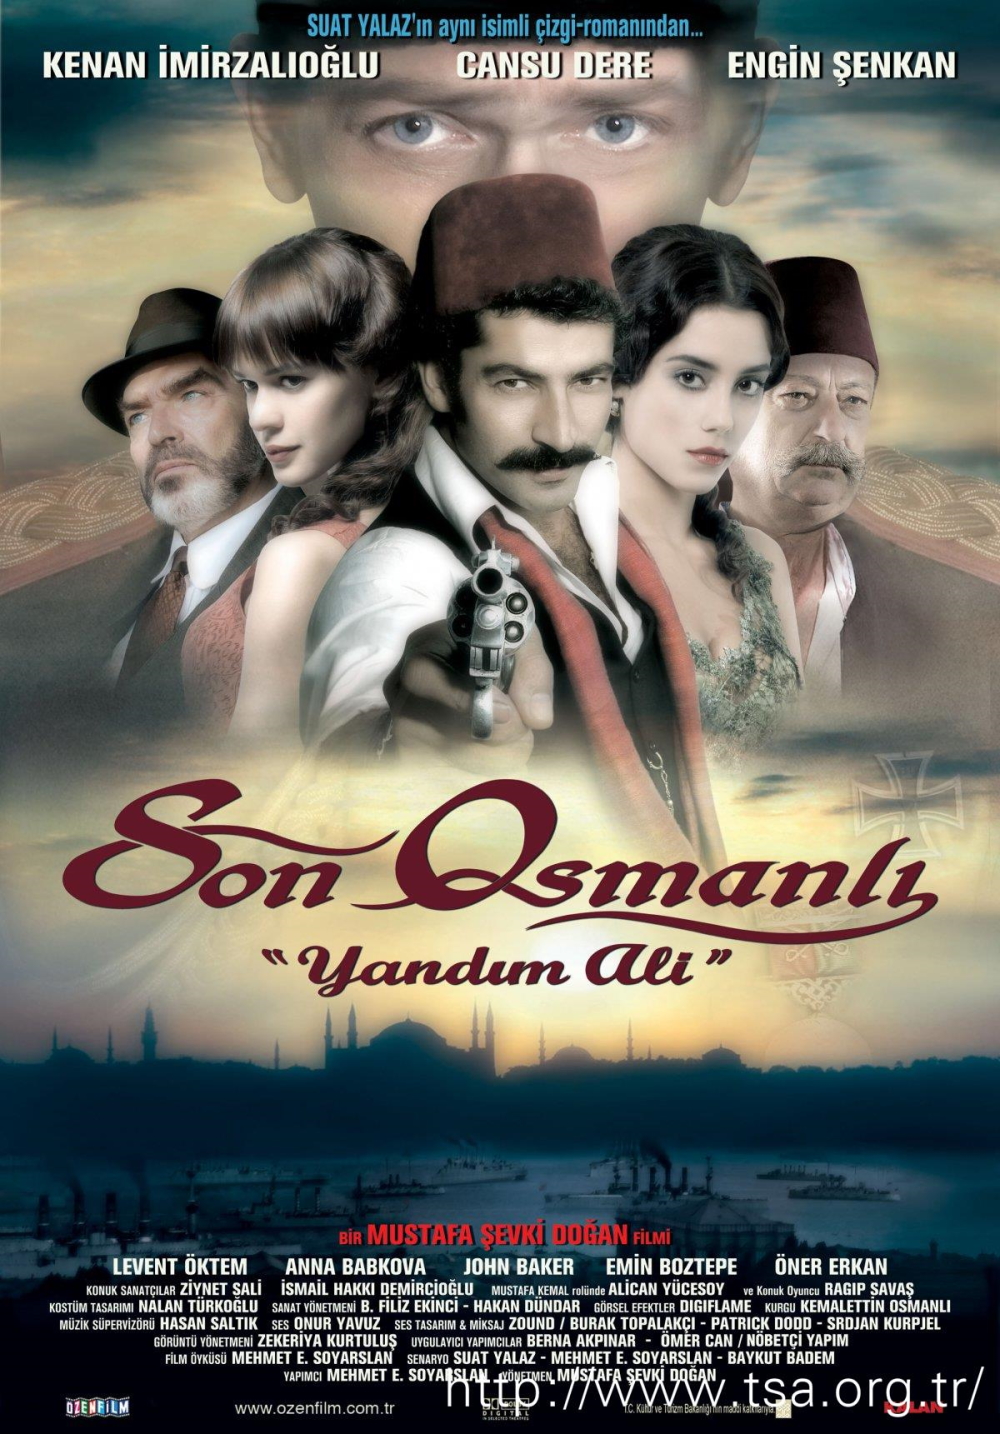 cumhuriyet, film, 29 ekim, atatürk, türkiye, son osmanlı yandım ali 